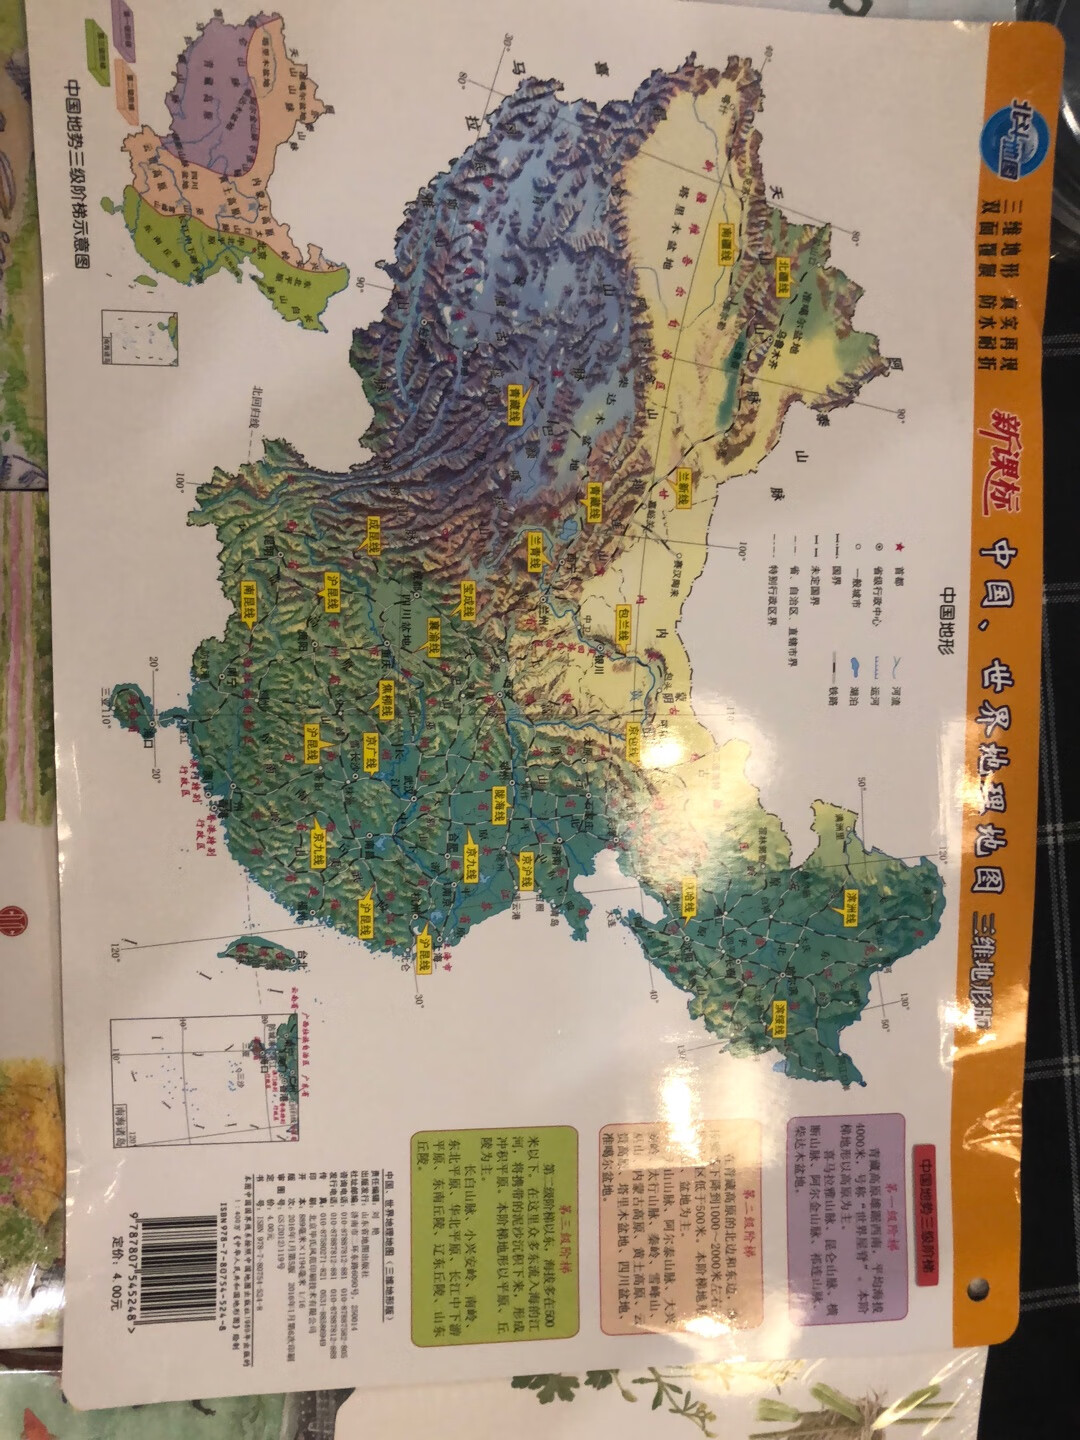 世界地图 中国地图是正反面一刷的 本来以为是两张